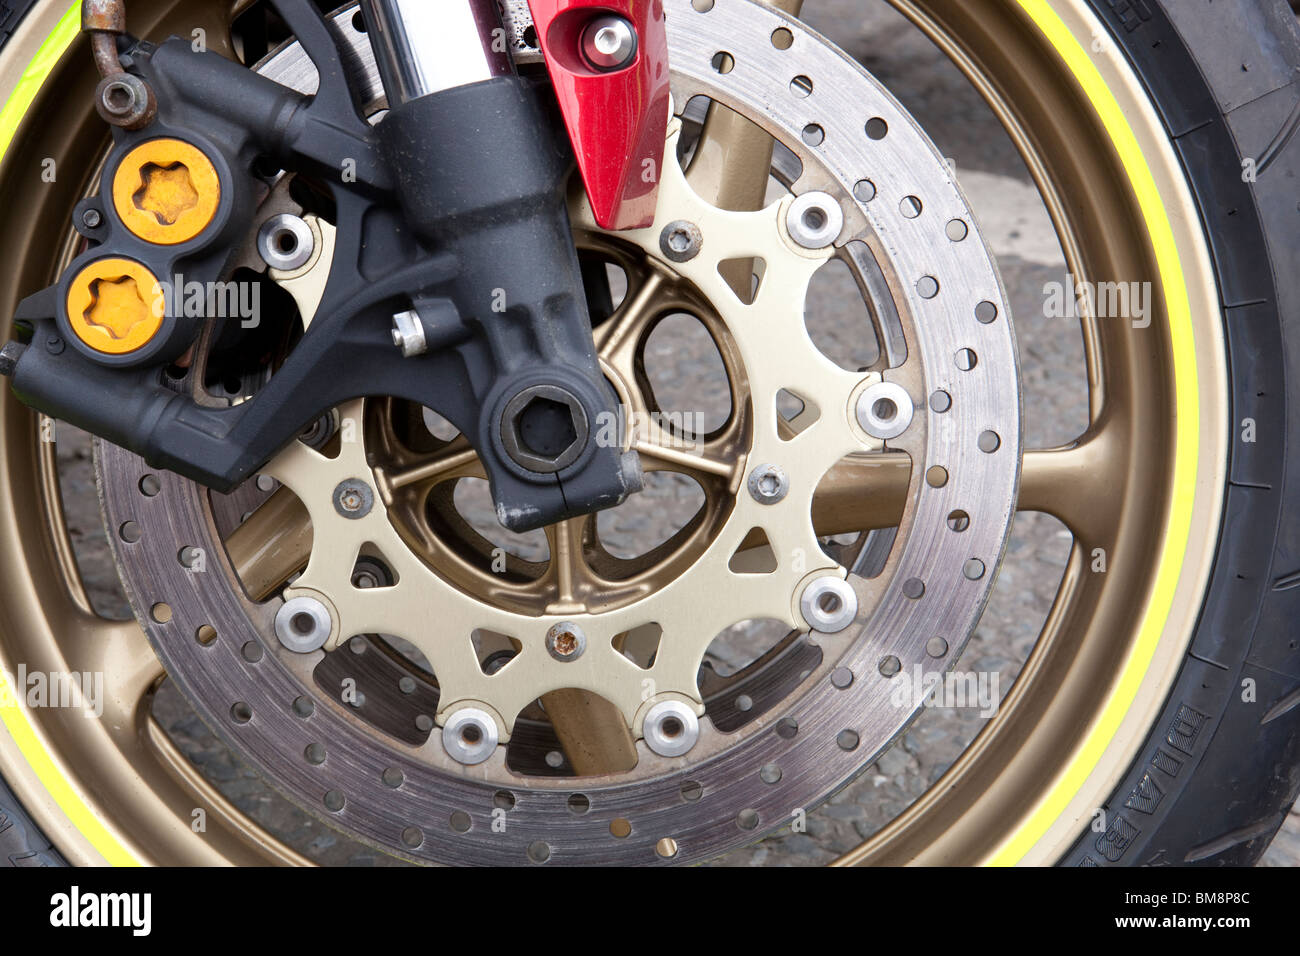 Motorrad hautnah Vorderradbremse Scheibe Reifen Gabeln auf einem Motorrad  Stockfotografie - Alamy